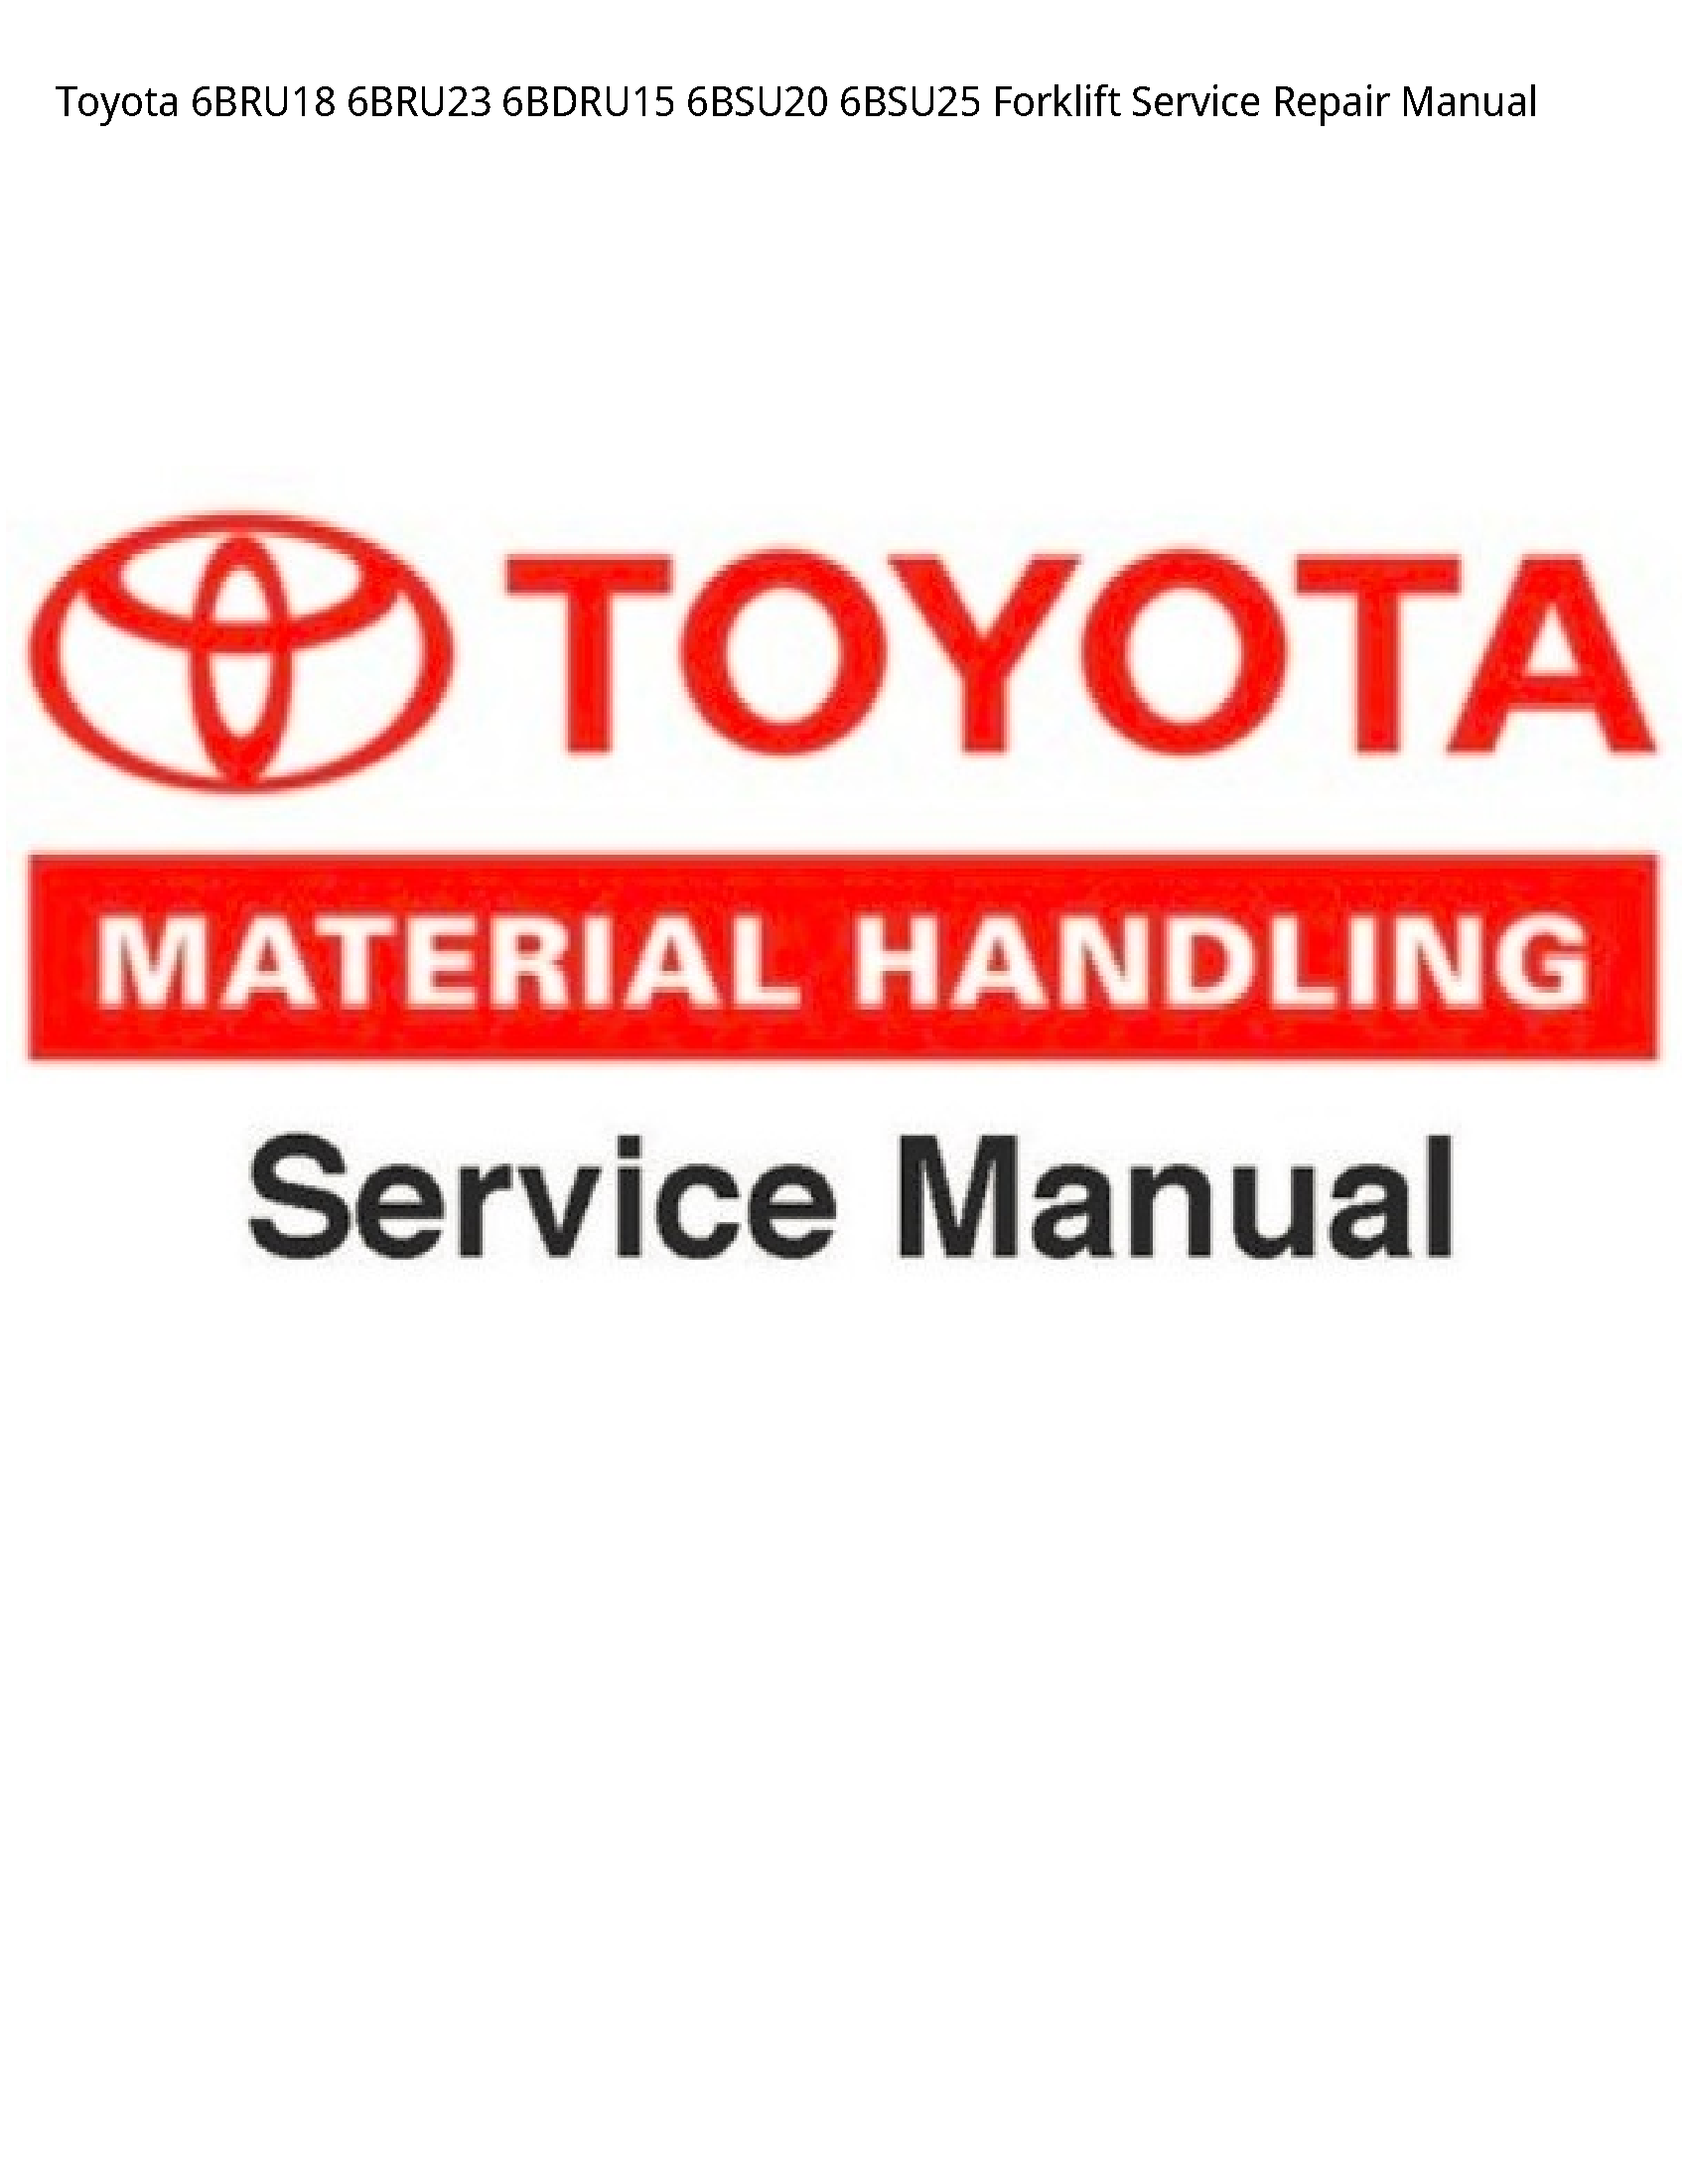 Toyota 6BRU18 Forklift manual